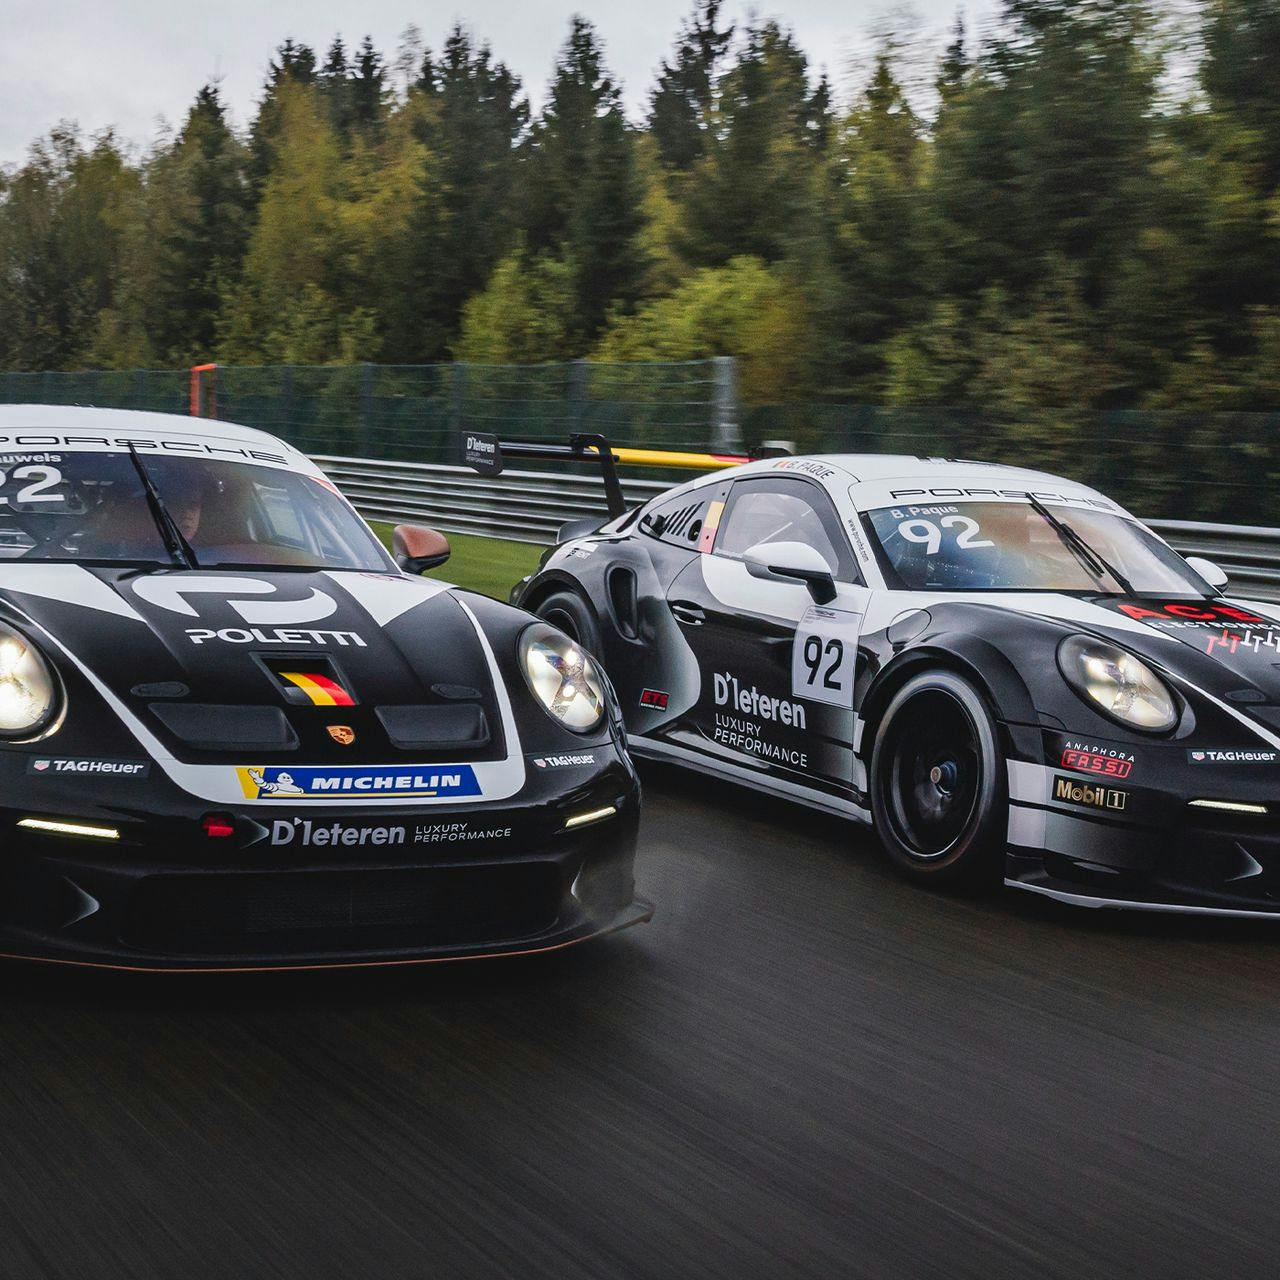 D’Ieteren Luxury Performance partners with NGT Racing